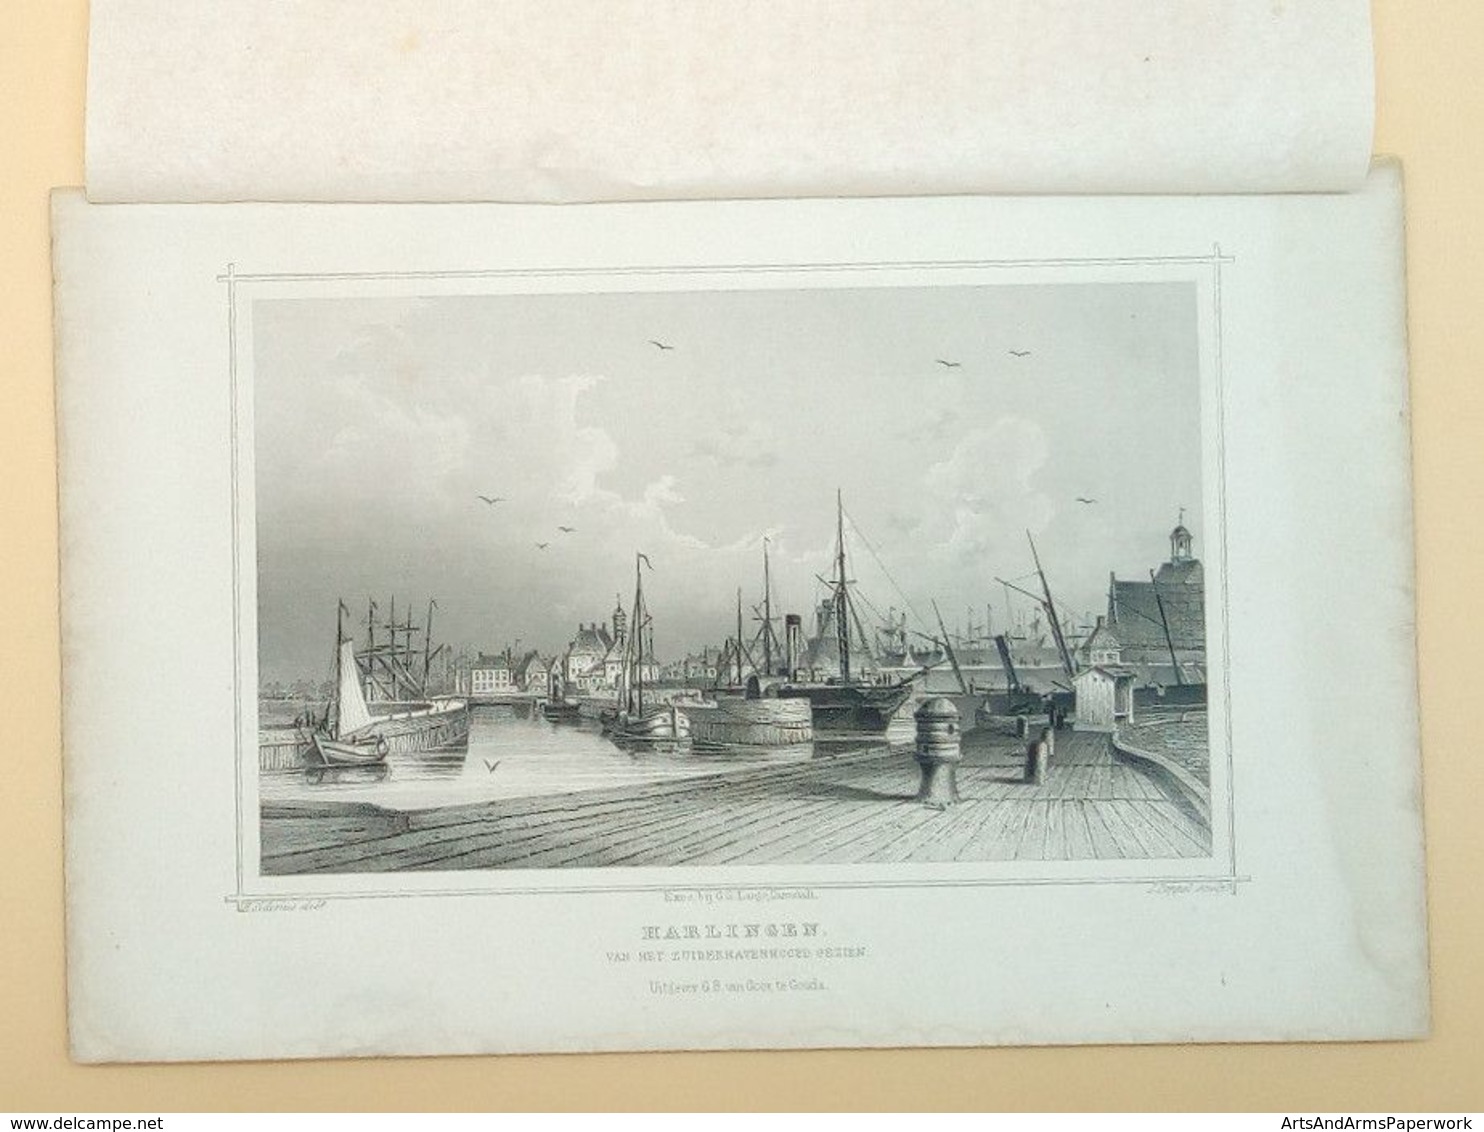 Harlingen Van Het Zuiderhavenhoofd Gezien 1858/ Harlingen (NL), Seen From The Zuiderhavenhoofd 1858. Siderius, FRIESLAND - Kunst